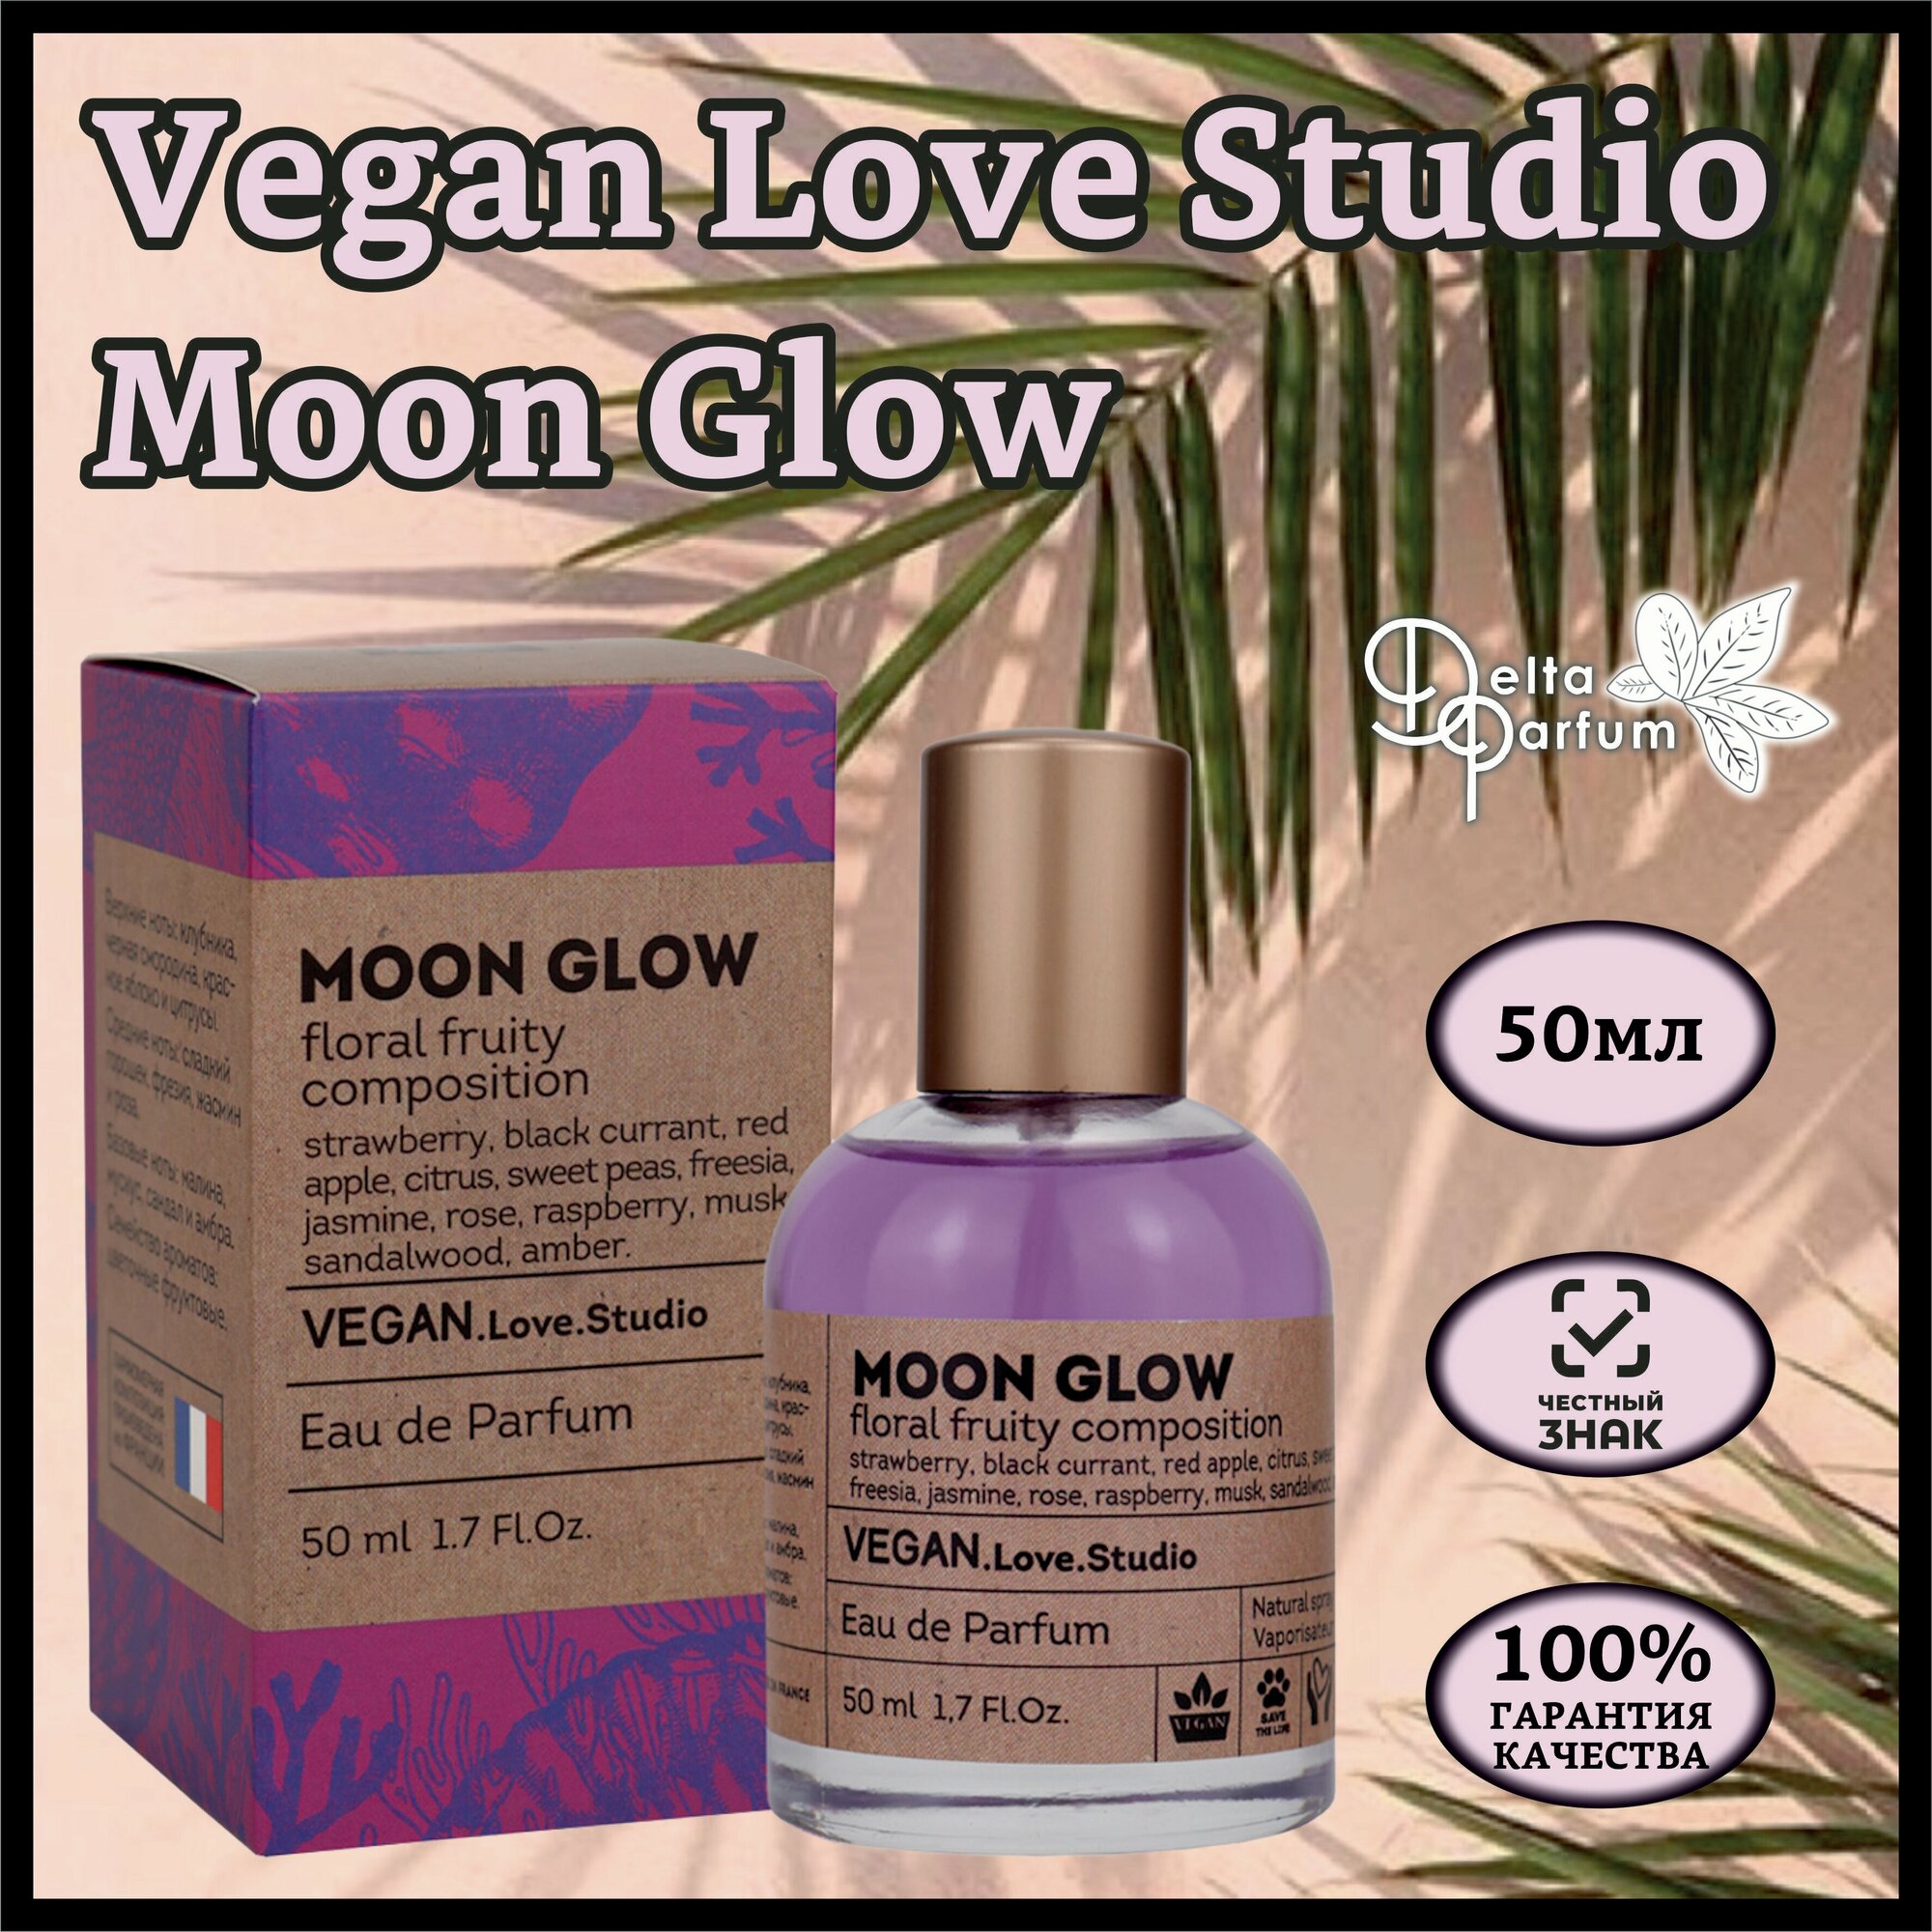 Delta parfum Туалетная вода женская Vegan Love Studio Moon Glow, 50мл